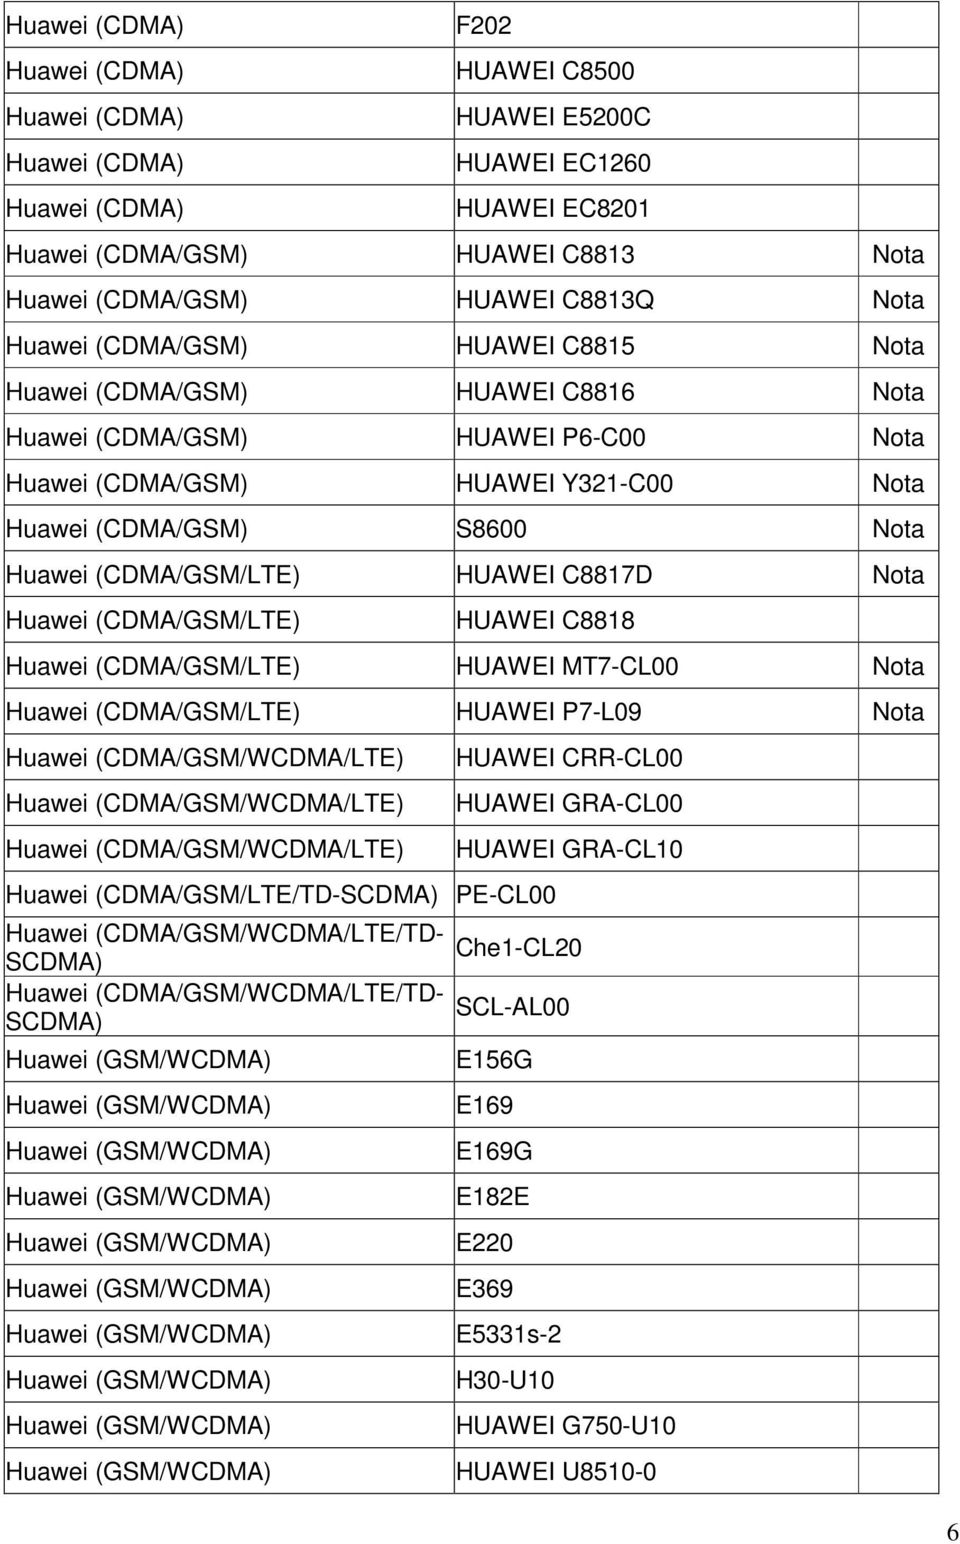 (CDMA/GSM/LTE) HUAWEI C8817D Nota Huawei (CDMA/GSM/LTE) HUAWEI C8818 Huawei (CDMA/GSM/LTE) HUAWEI MT7-CL00 Nota Huawei (CDMA/GSM/LTE) HUAWEI P7-L09 Nota Huawei (CDMA/GSM/WCDMA/LTE) Huawei